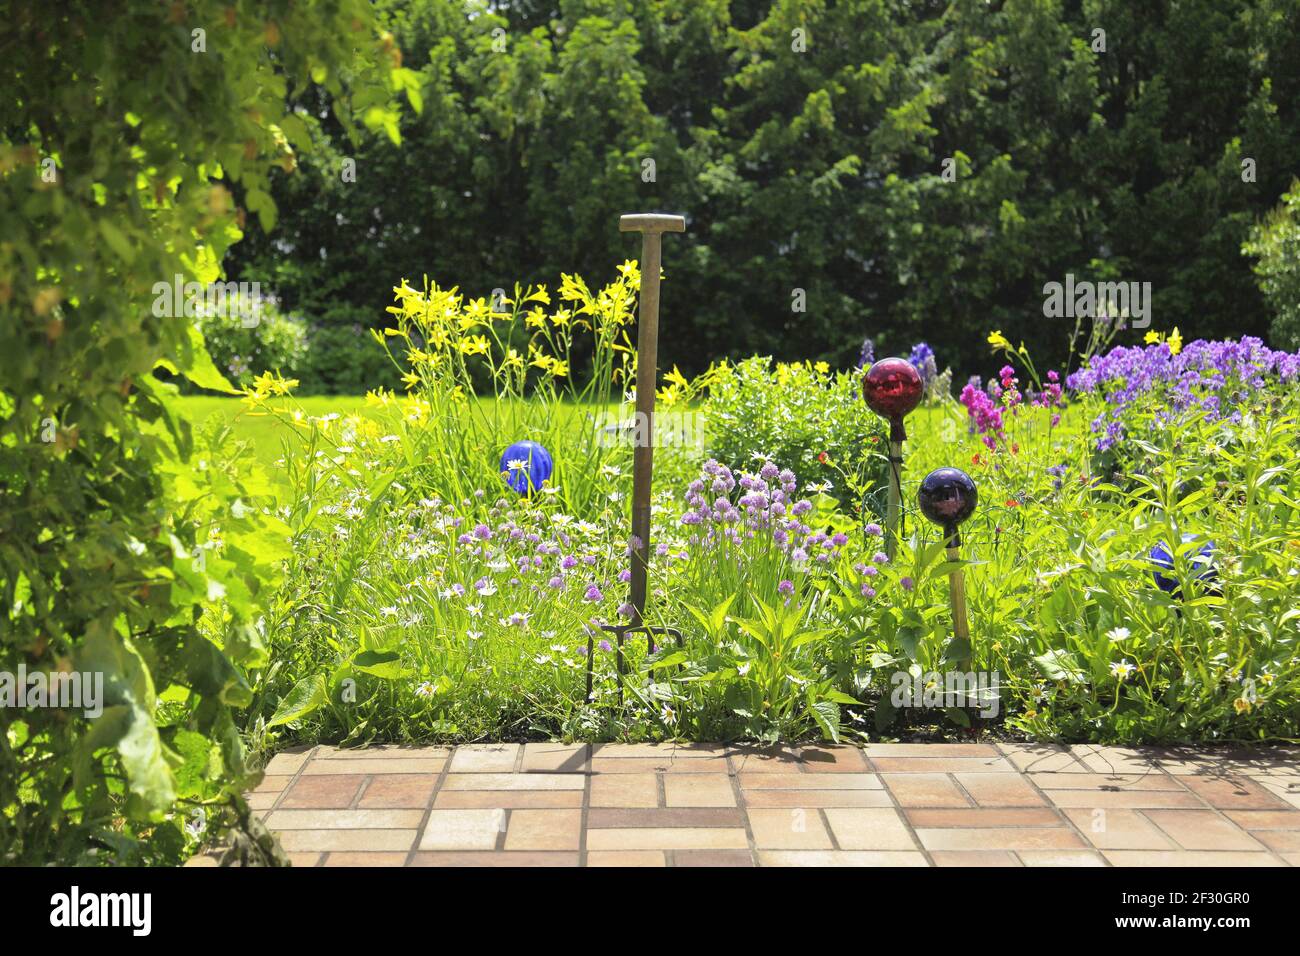 Beaux jardins bien entretenus avec des fleurs colorées Banque D'Images